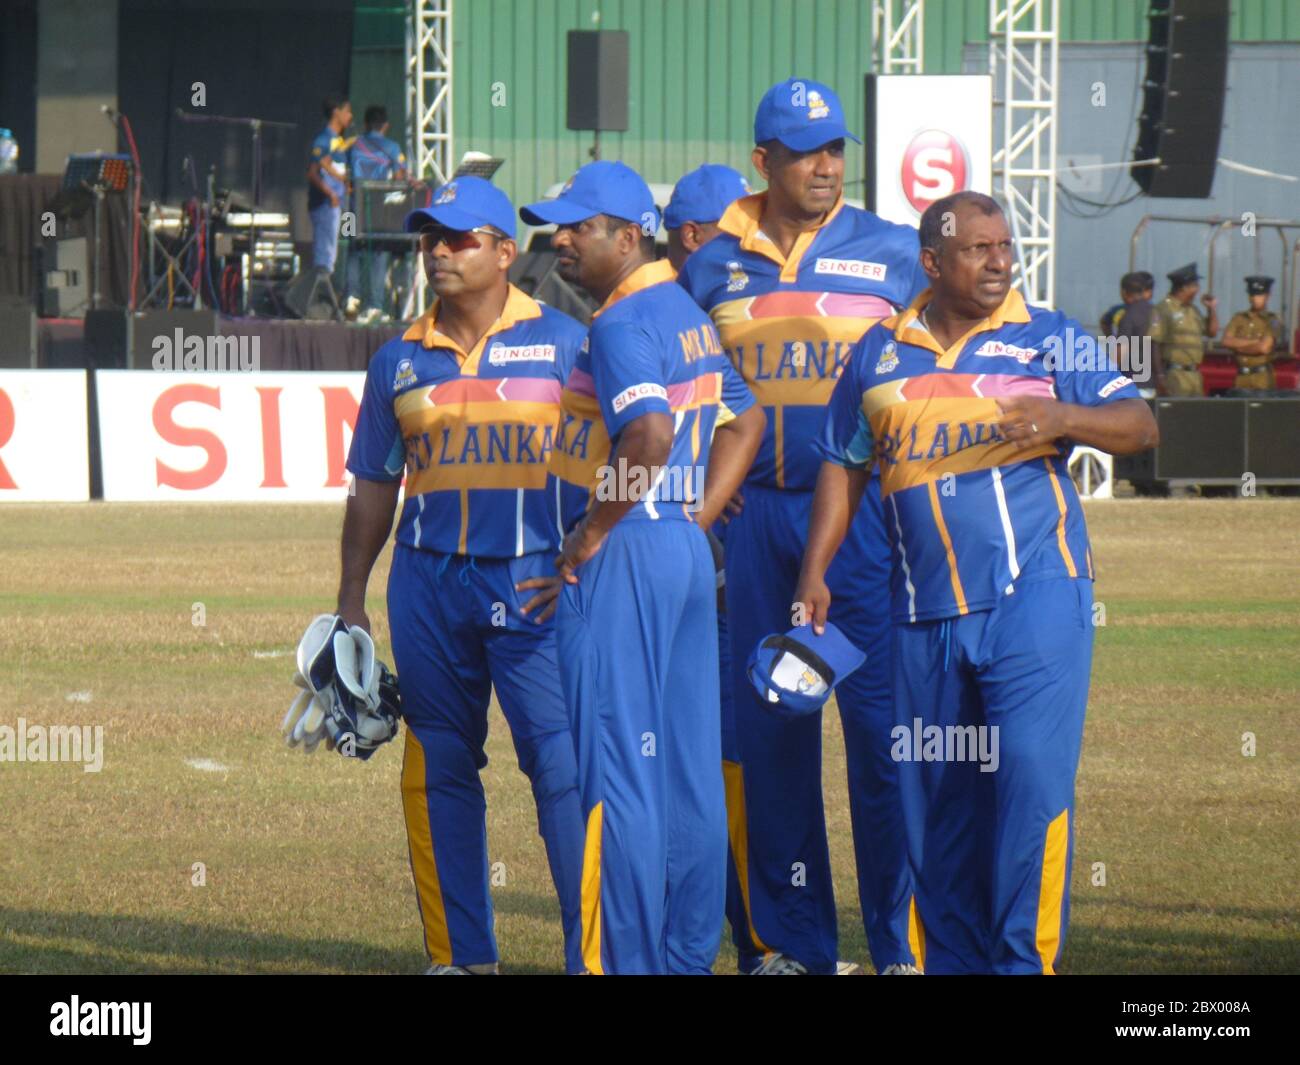 Ehemalige Sri Lanka Cricket World Cup Gewinner aus 1996. In einem freundlichen Spiel, um Mittel für weniger glückliche Kricketspieler zu sammeln. Von links: Romesh Kaluwitharana, Muttiah Muralitharan, Promodya Wickramasignhe und Aravinda De Silva. Stockfoto